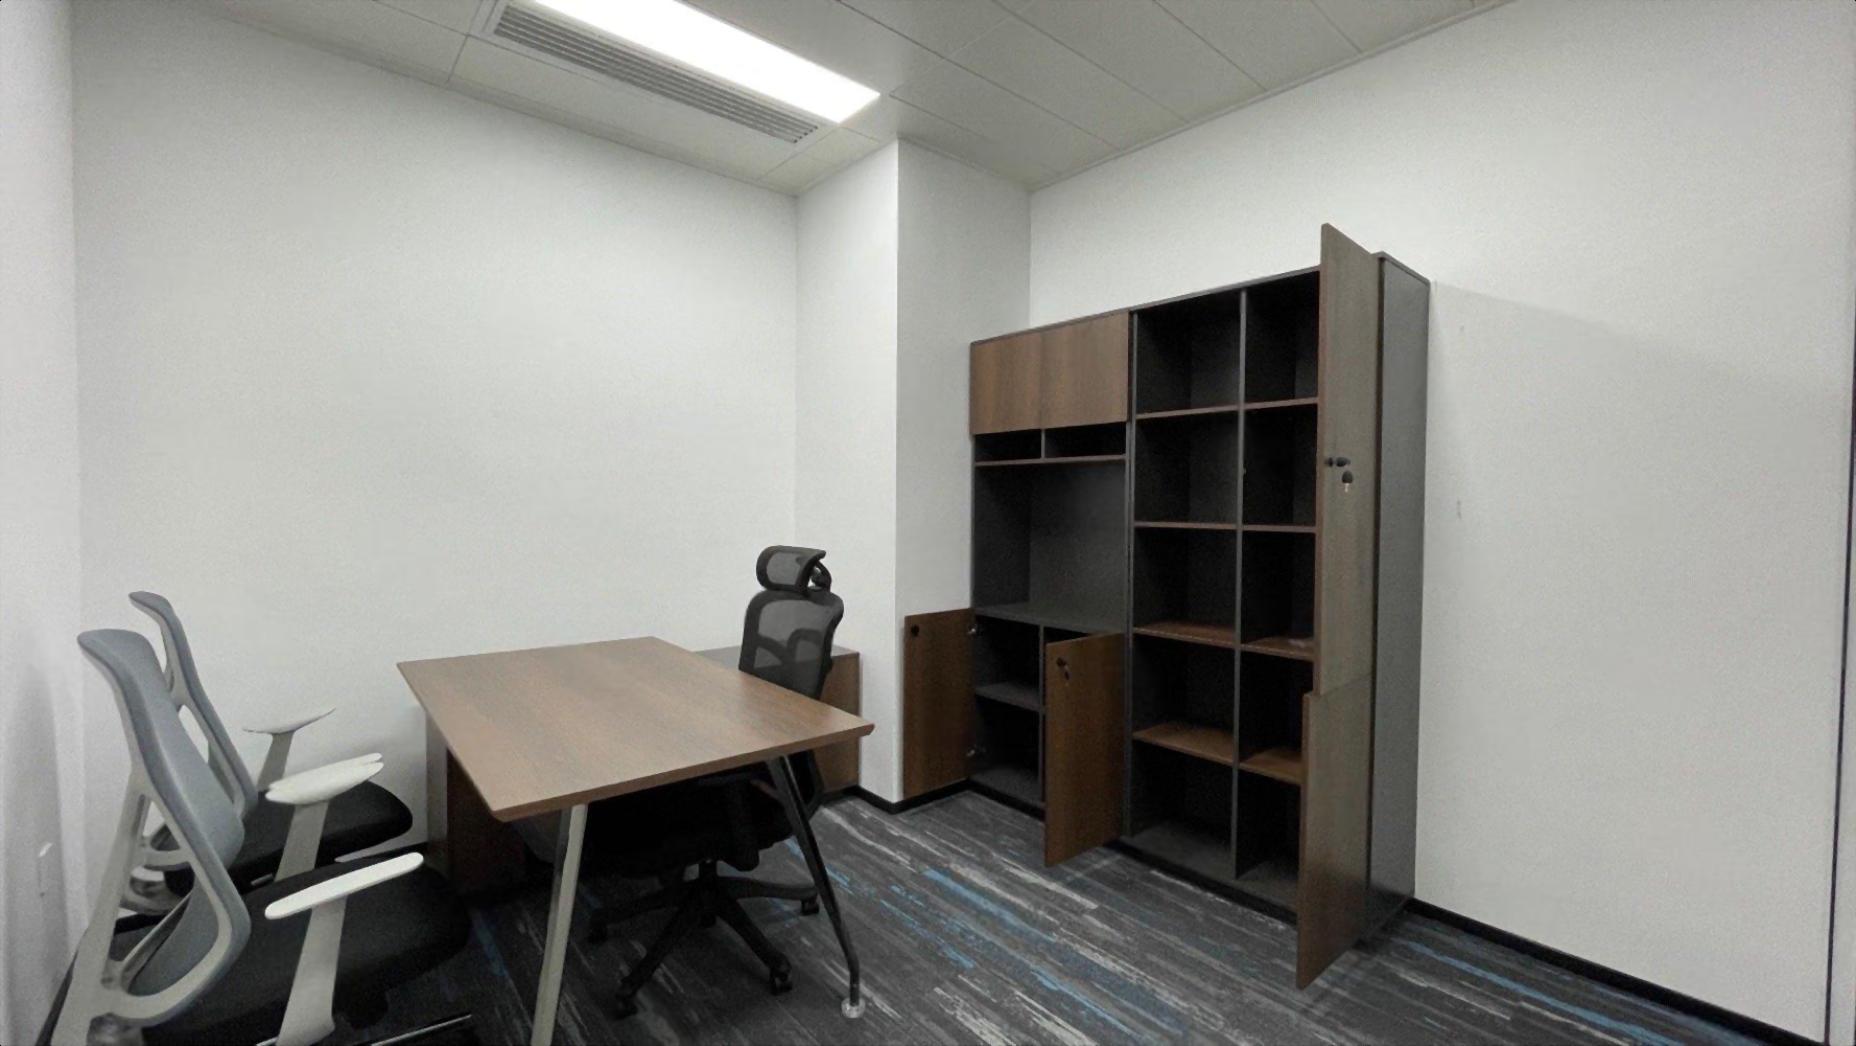 南山科技园精装修办公室200平3加1带家私空调齐全周边业态齐